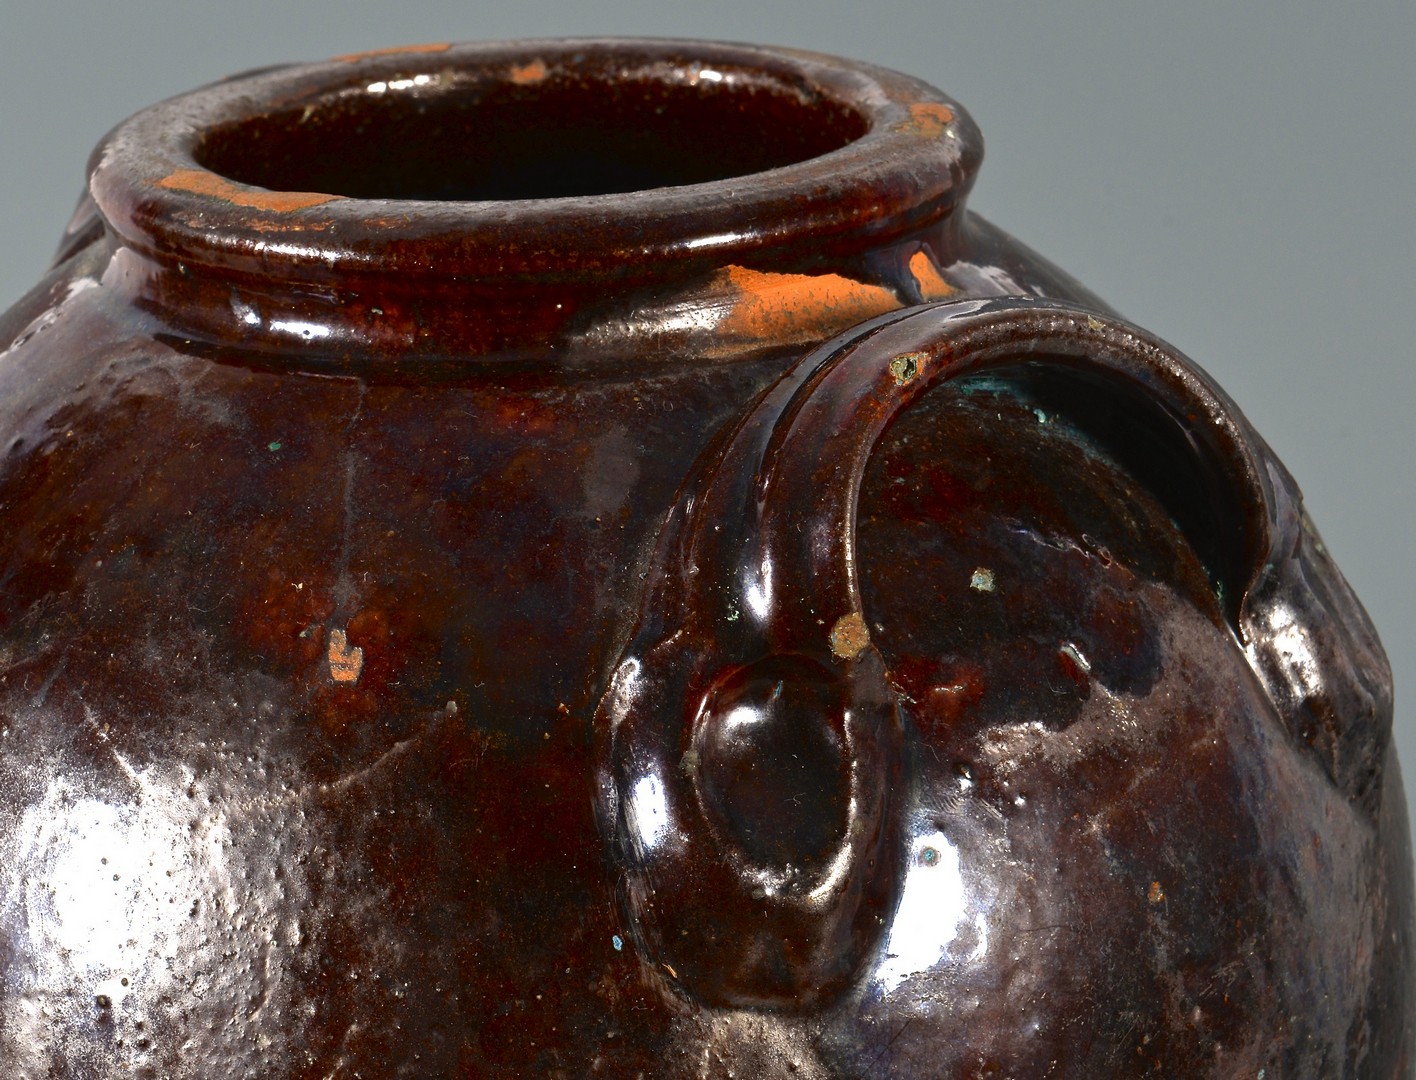 Lot 153: Southwest Virginia Earthenware glazed jar